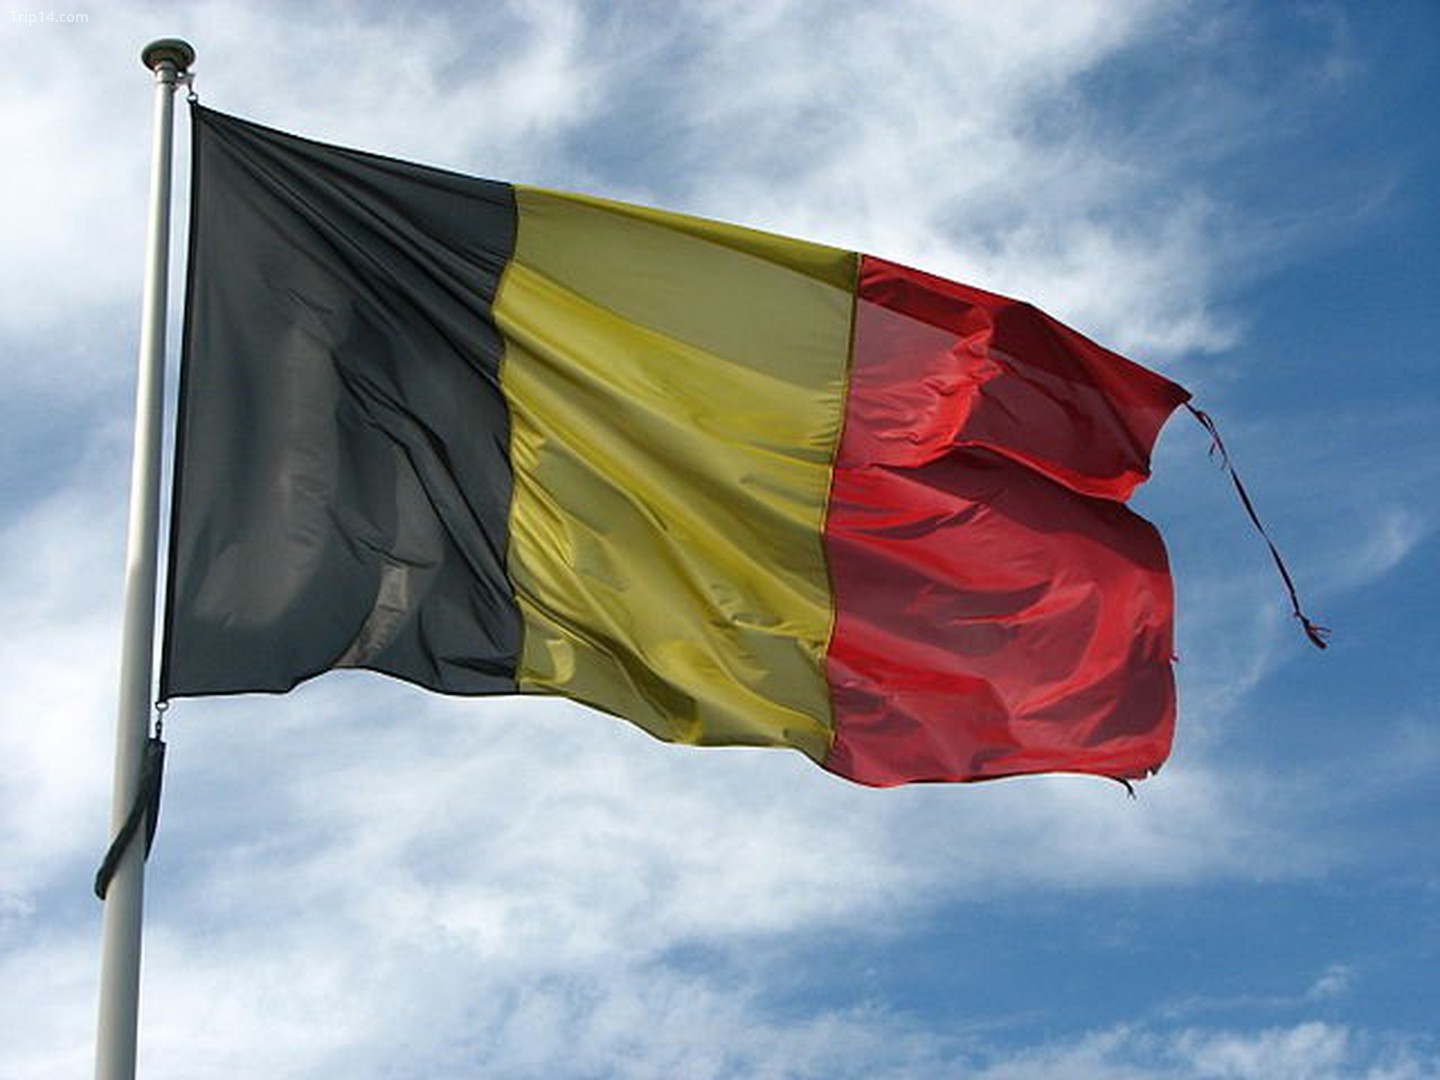 Du lịch Bỉ và quốc kỳ là một trải nghiệm tuyệt vời. Không chỉ được ngắm nhìn những địa điểm du lịch nổi tiếng như Bruges và Brussels, bạn còn có cơ hội tìm hiểu về quốc kỳ của Bỉ - một lá cờ được thiết kế cẩn thận và đầy ý nghĩa. Hãy cùng nhìn nhận bức tranh đẹp của quốc kỳ Bỉ, để có thể khám phá những bí mật tinh túy của nó.